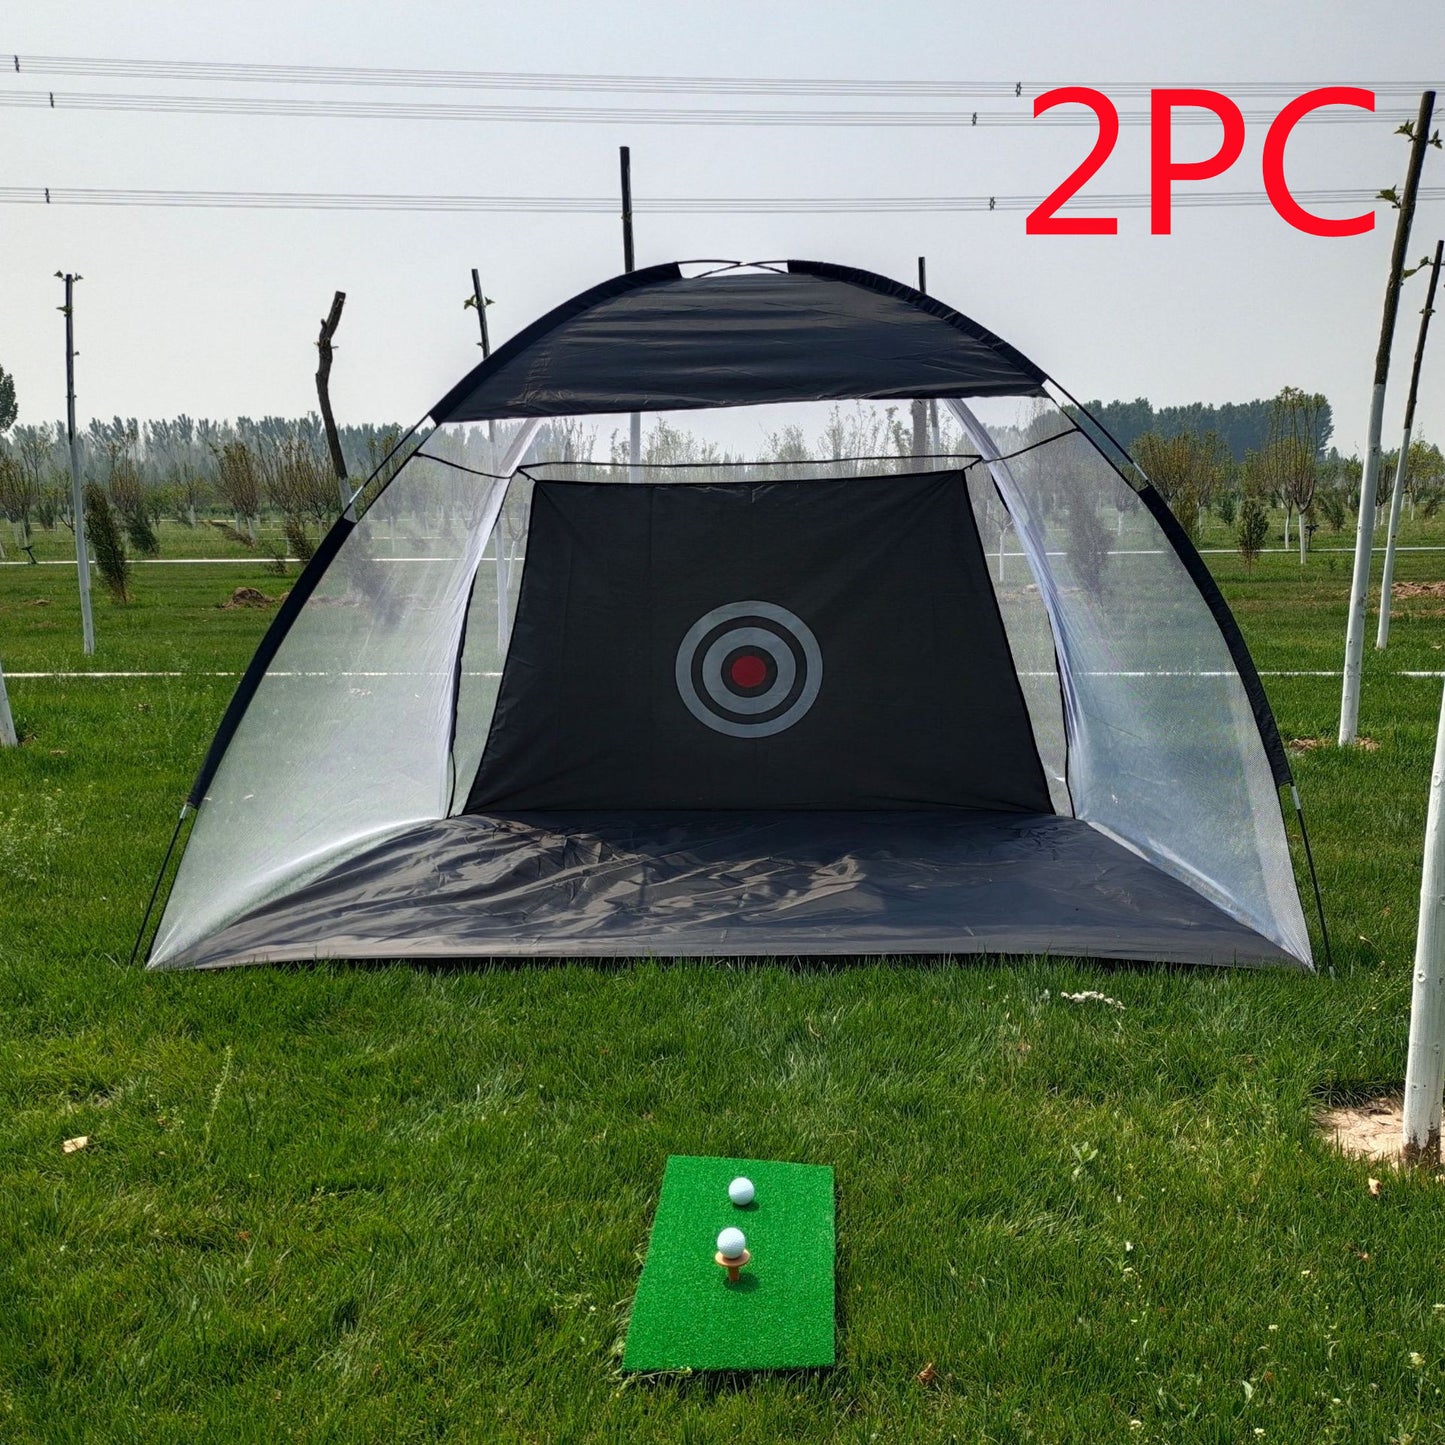 Camping Outdoor Golf Practice Net Practice Tent Golf Training Equipment Mesh